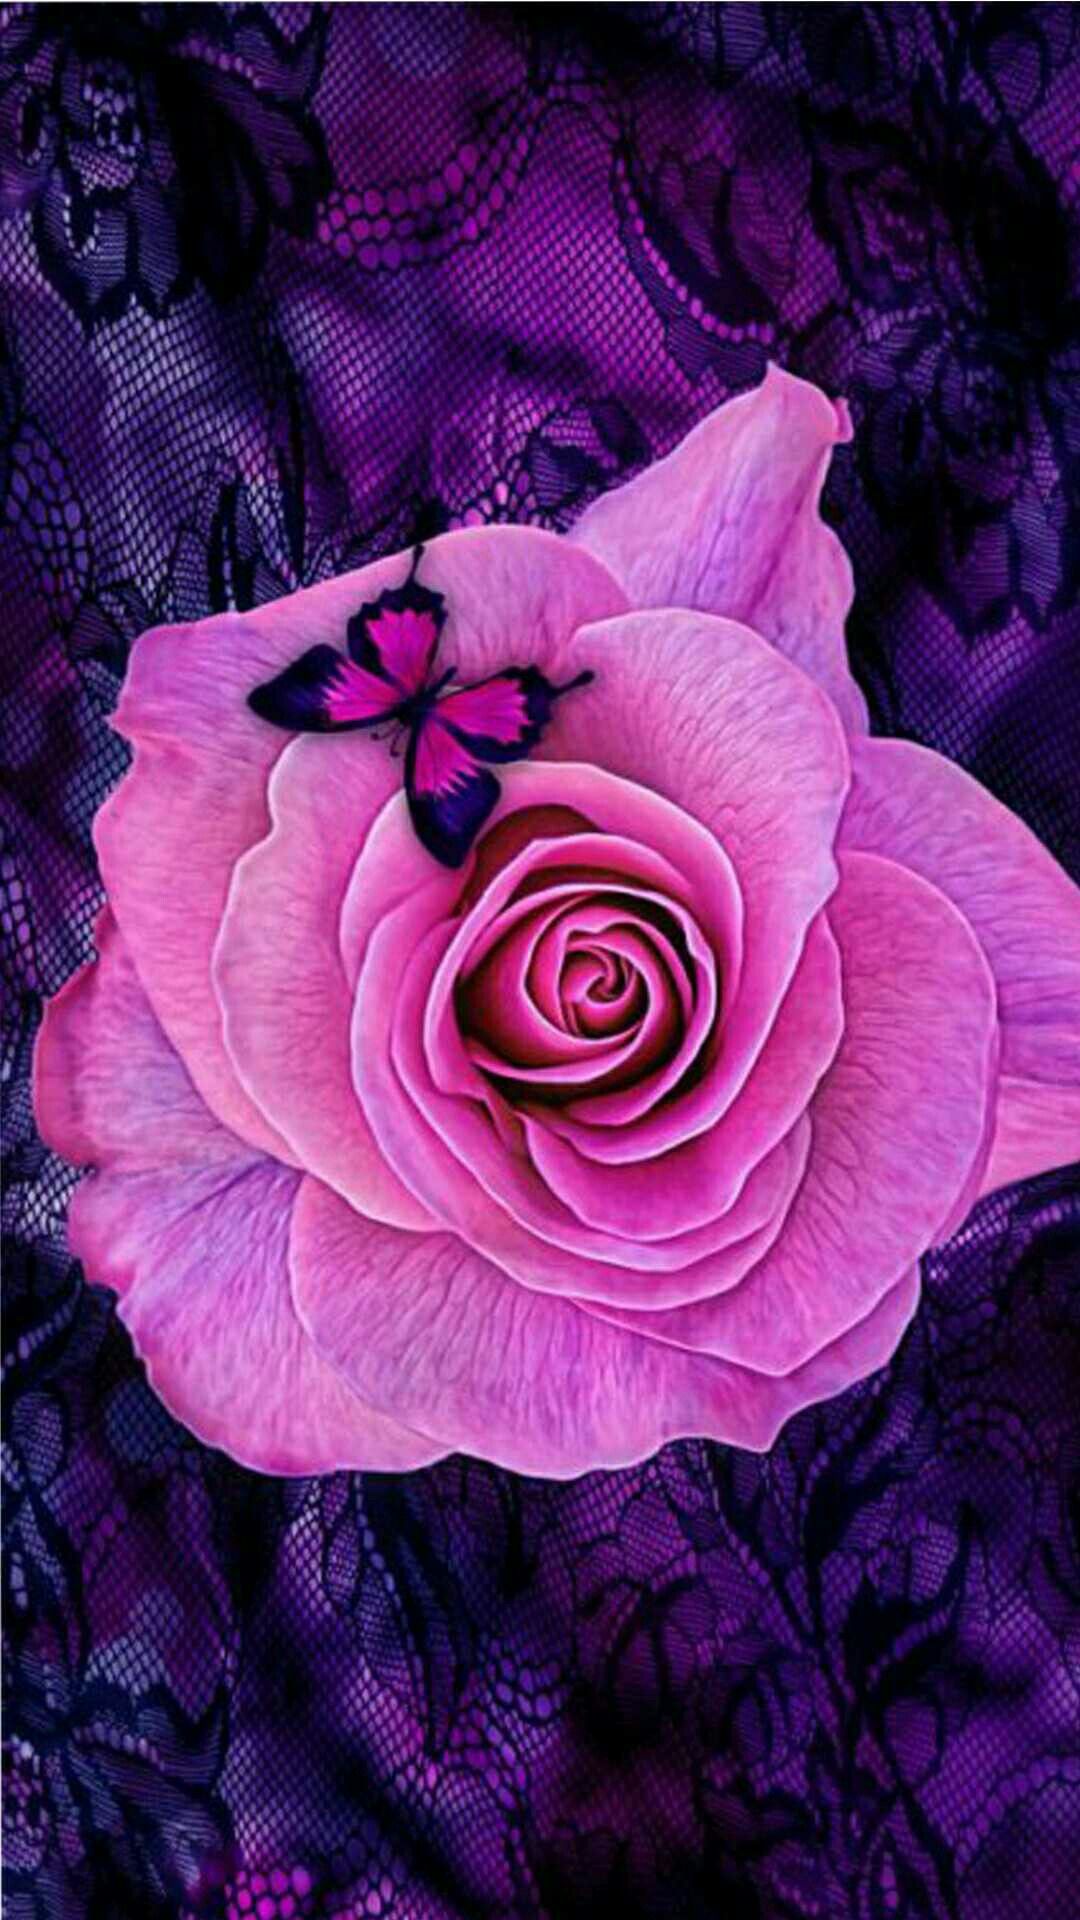 Tổng hợp hình ảnh hoa hồng tím đẹp nhất - [Kích thước hình ảnh: 1080x1920 px]